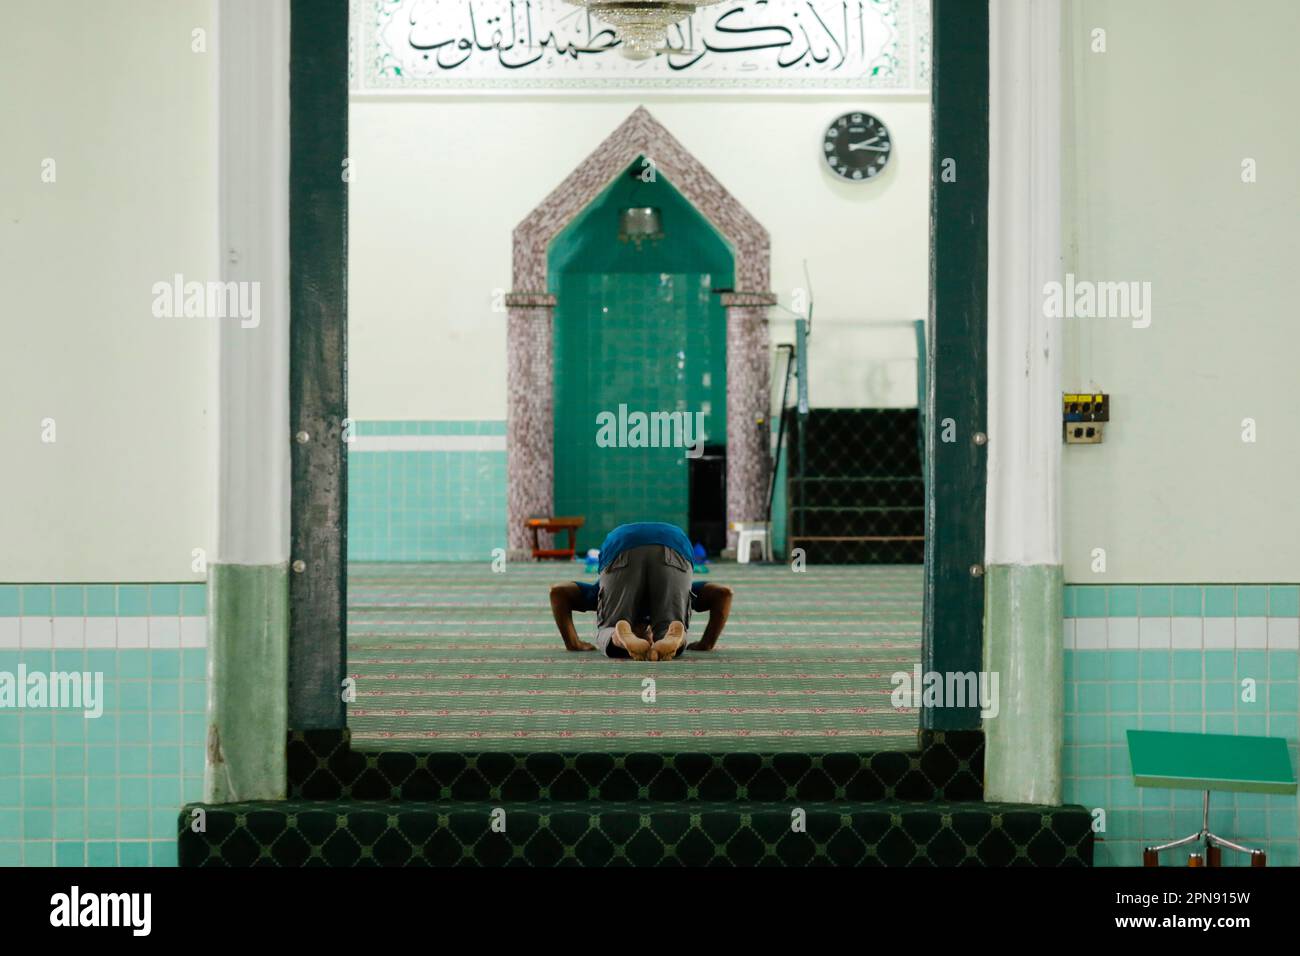 Die grüne Moschee oder die Masjid Jamae, eine der frühesten Moscheen in Singapur, befindet sich in Chinatown. Ein muslimischer Mann betet. Singapur. Stockfoto